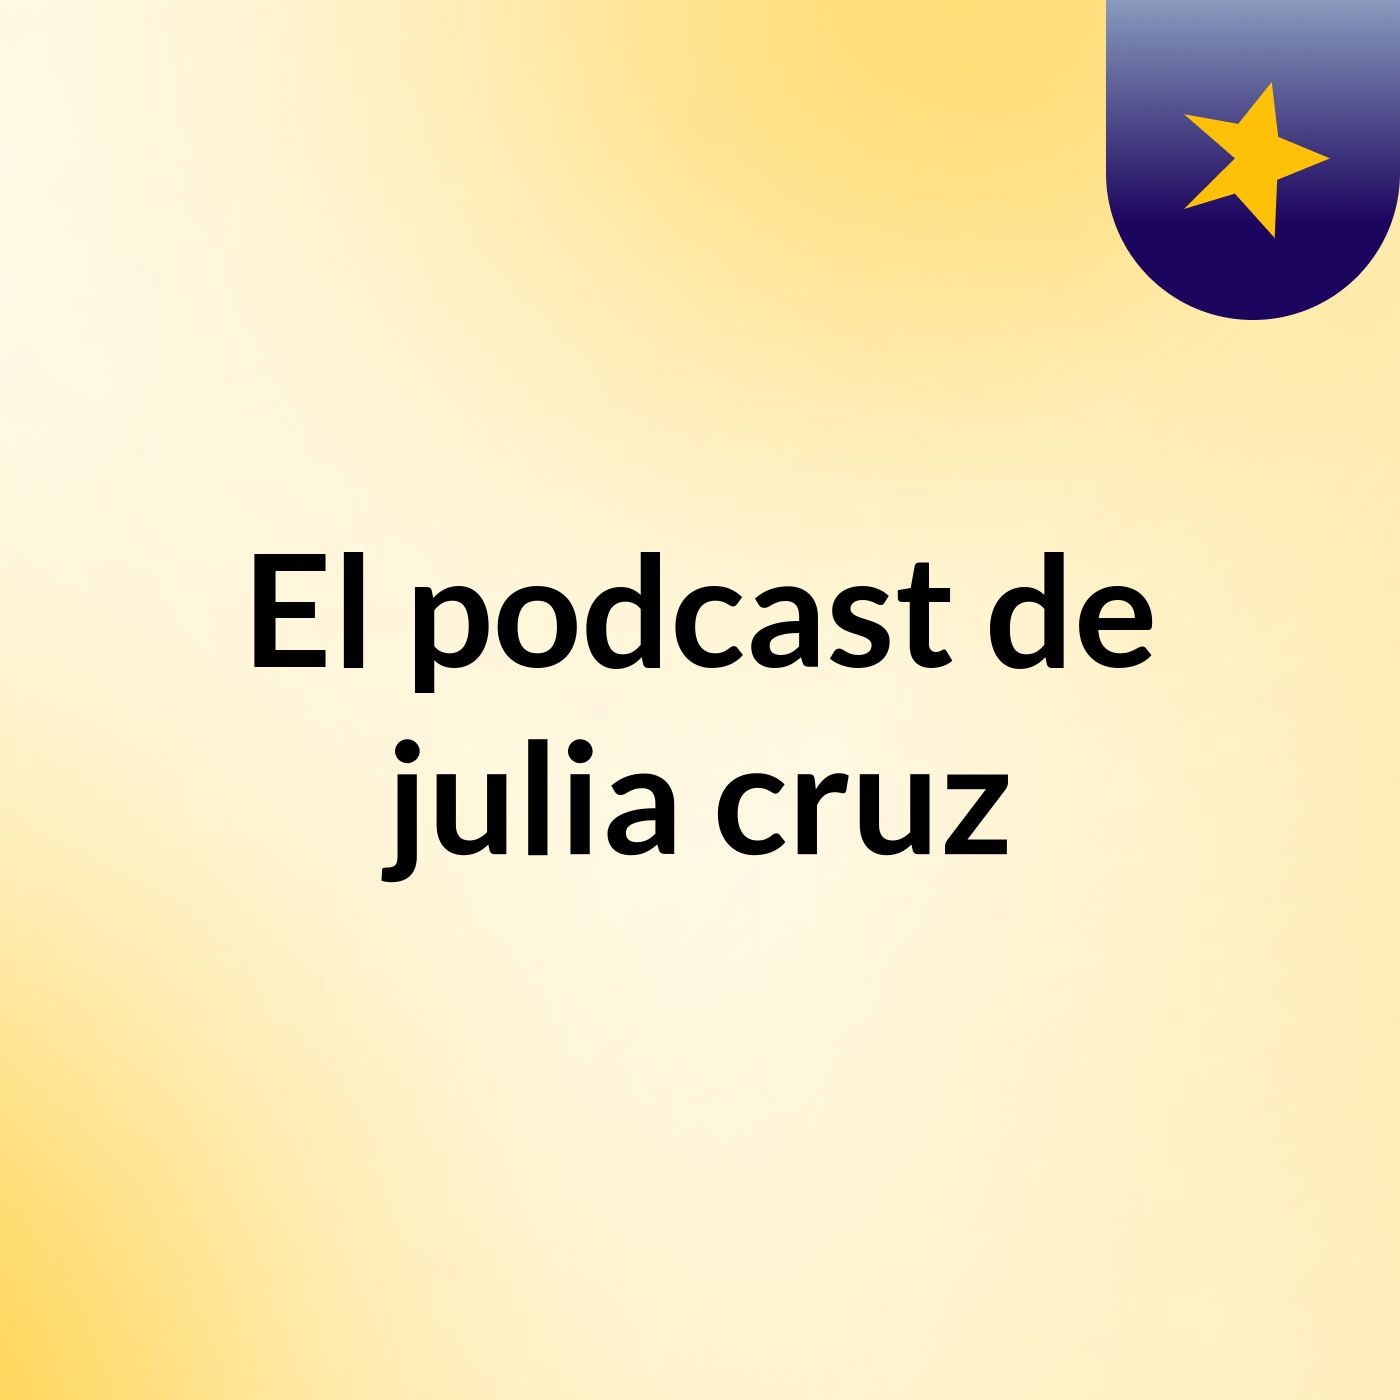 El podcast de julia cruz